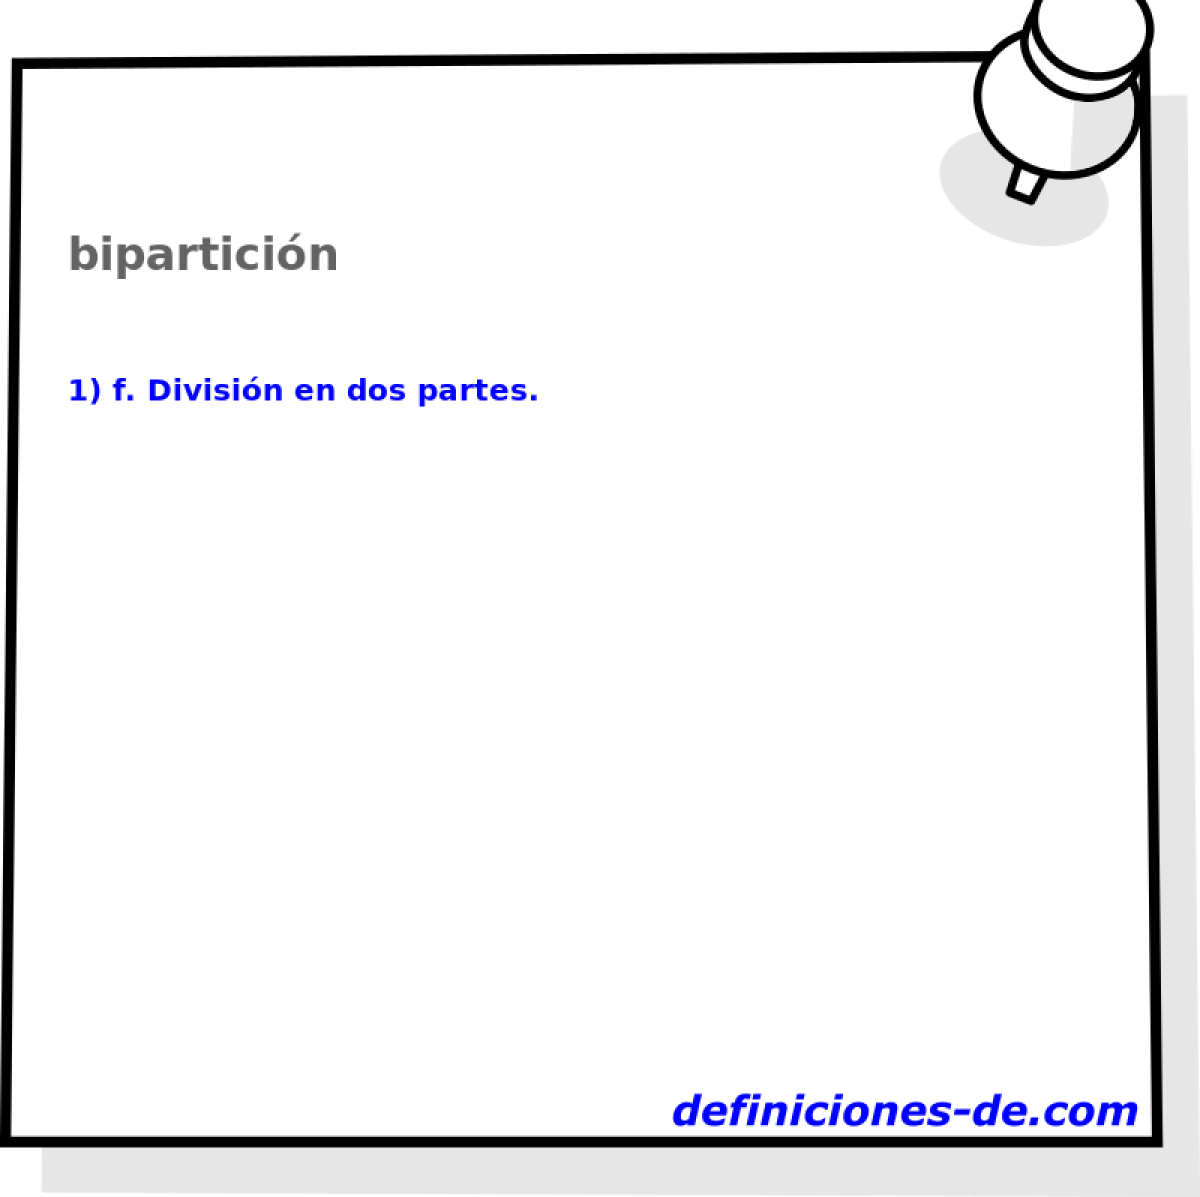 biparticin 